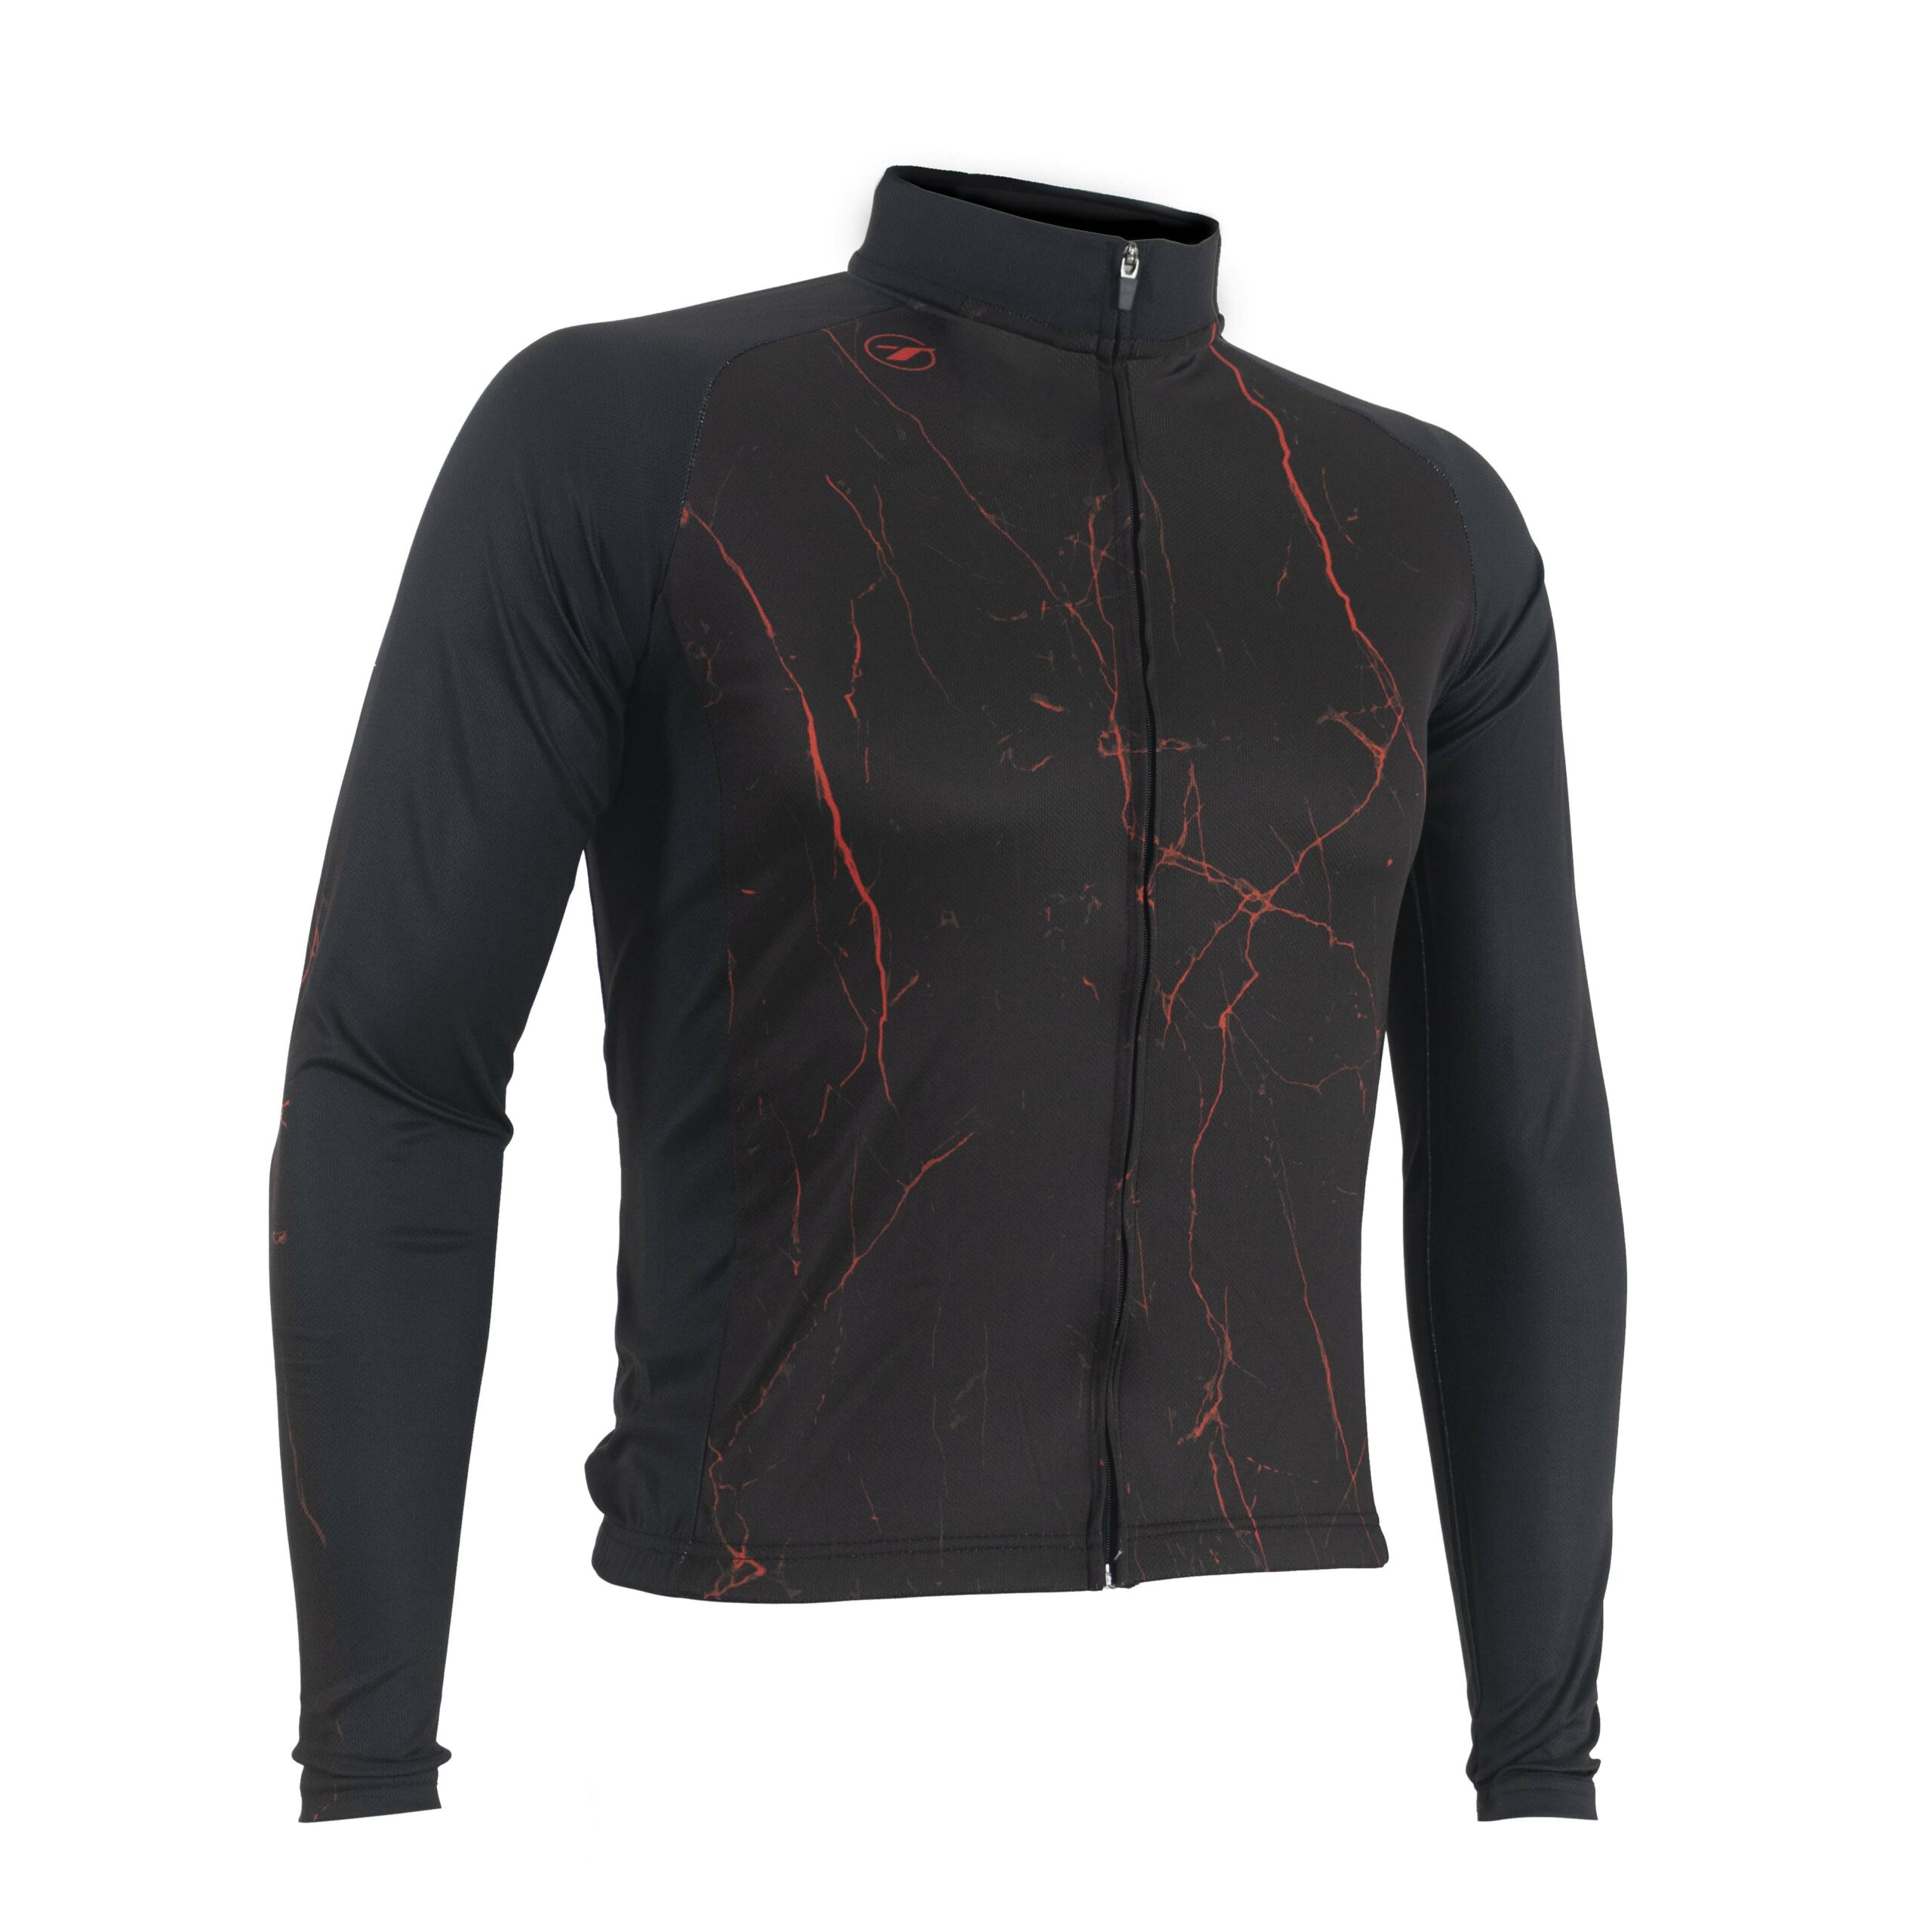 Camisa manga longa para ciclismo STORM | PRO LINE - Preto/Vermelho, P